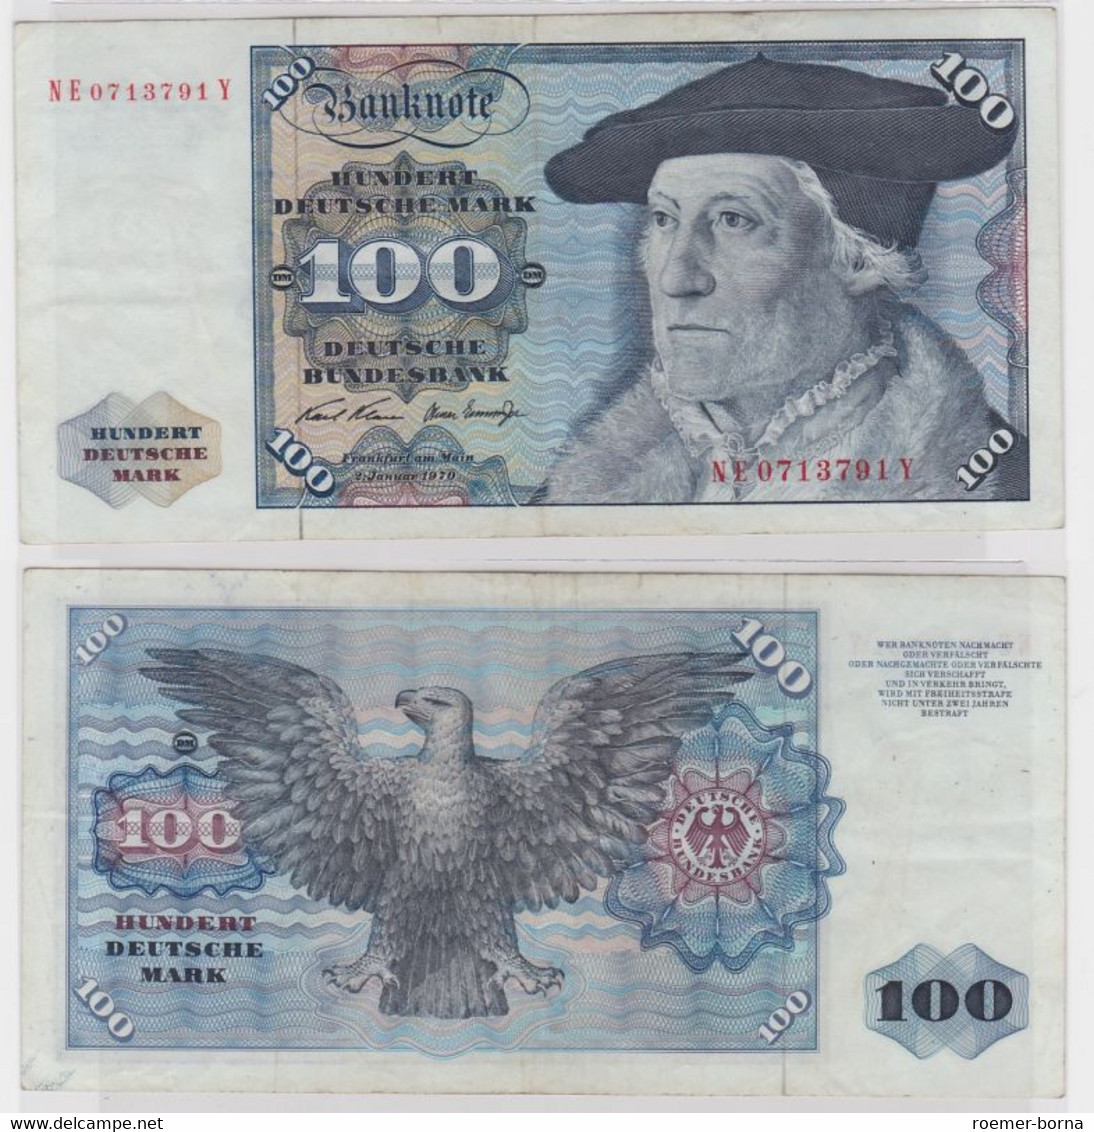 T146435 Banknote 100 DM Deutsche Mark Ro. 273b Schein 2.Jan 1970 KN NE 0713791 Y - 100 DM